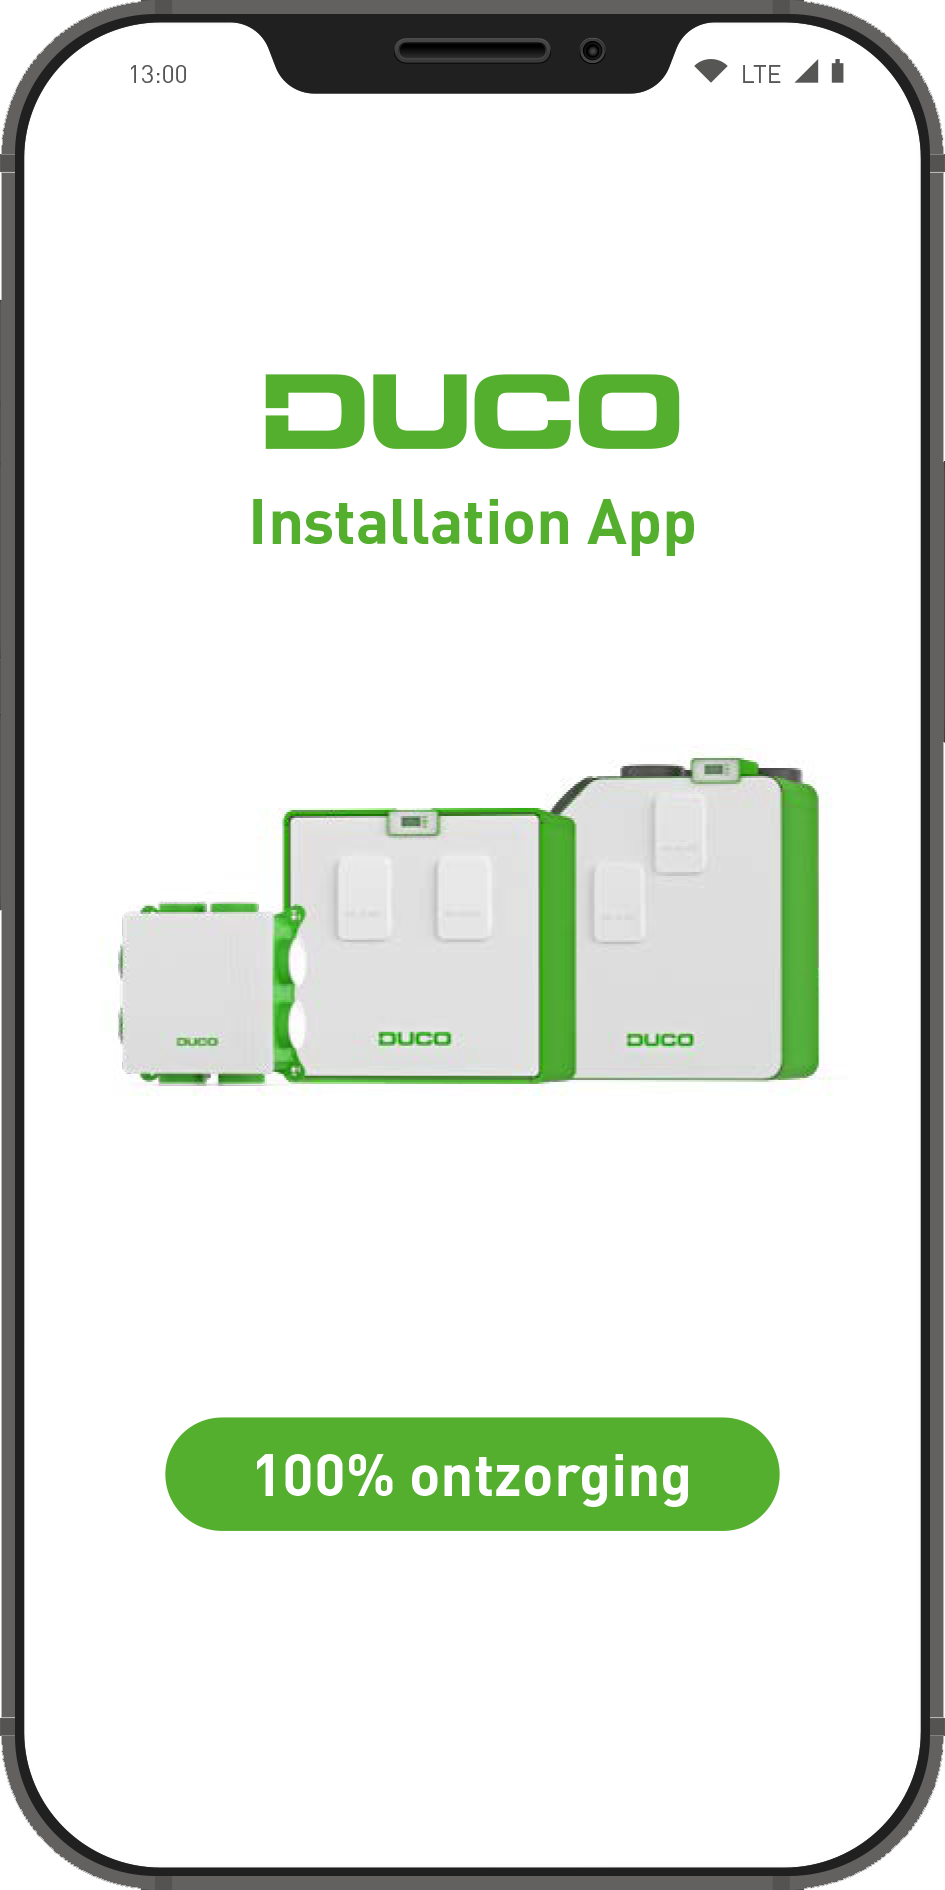 DUCO Installation App 100% ontzorging tijdens de installatie van een DucoBox ventilatiesysteem